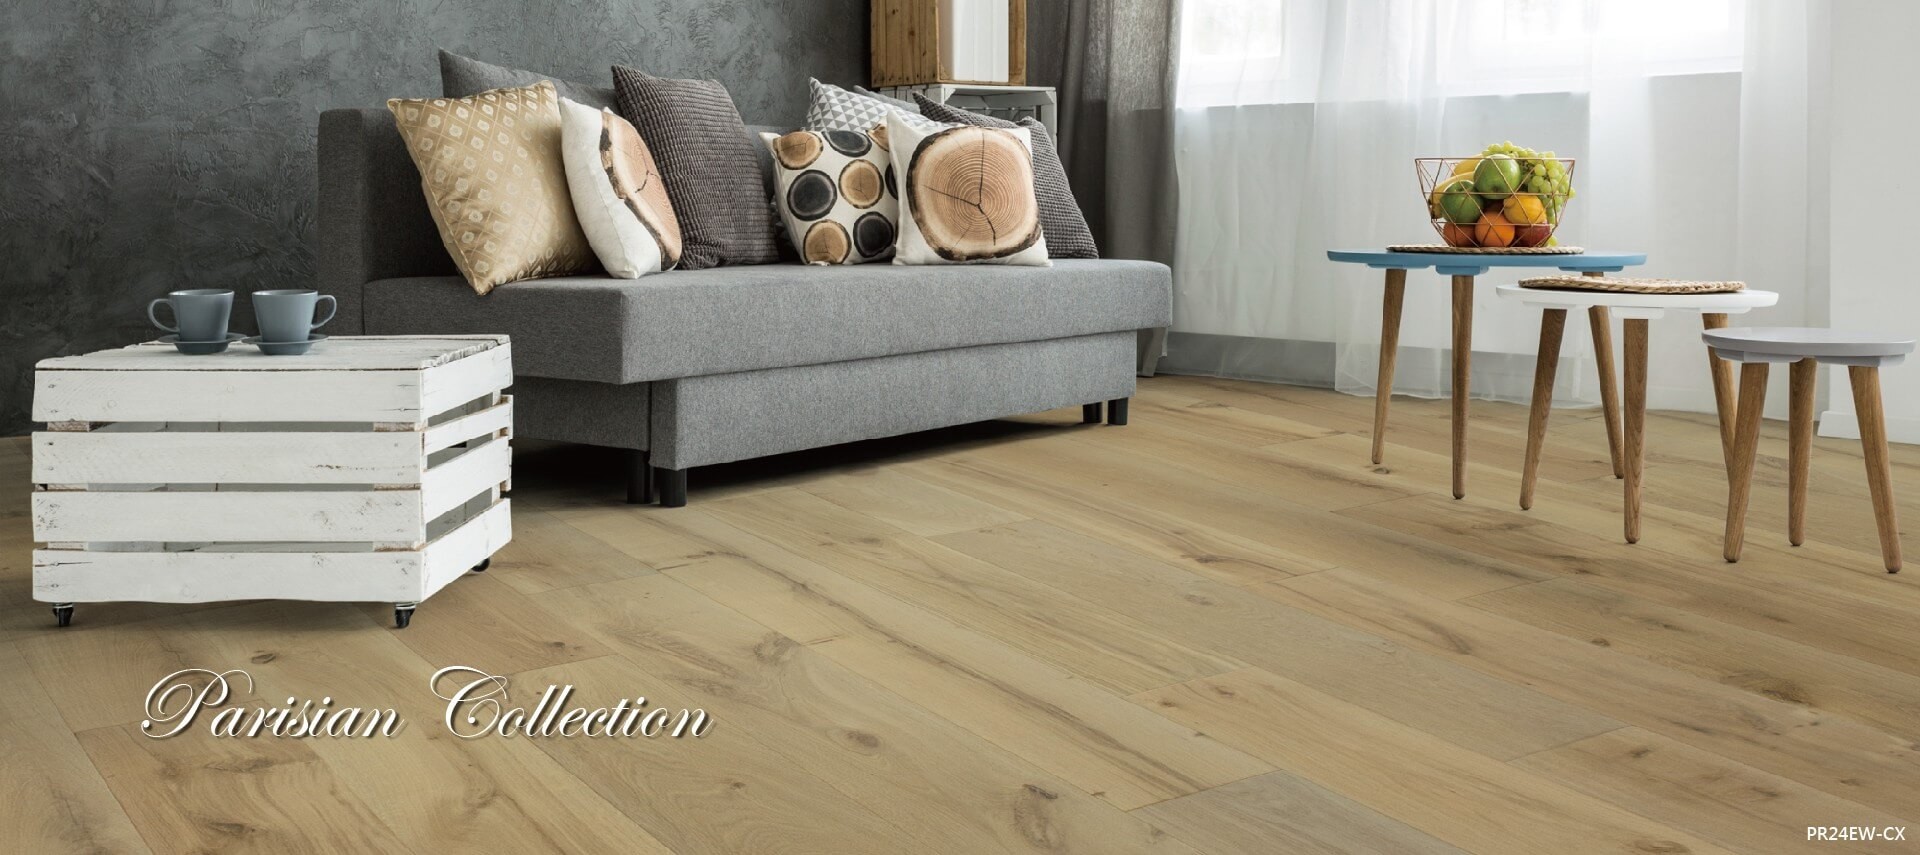 Ua Floors - 測試網 - Ua Wood Floors-Best Flooring For Your Home